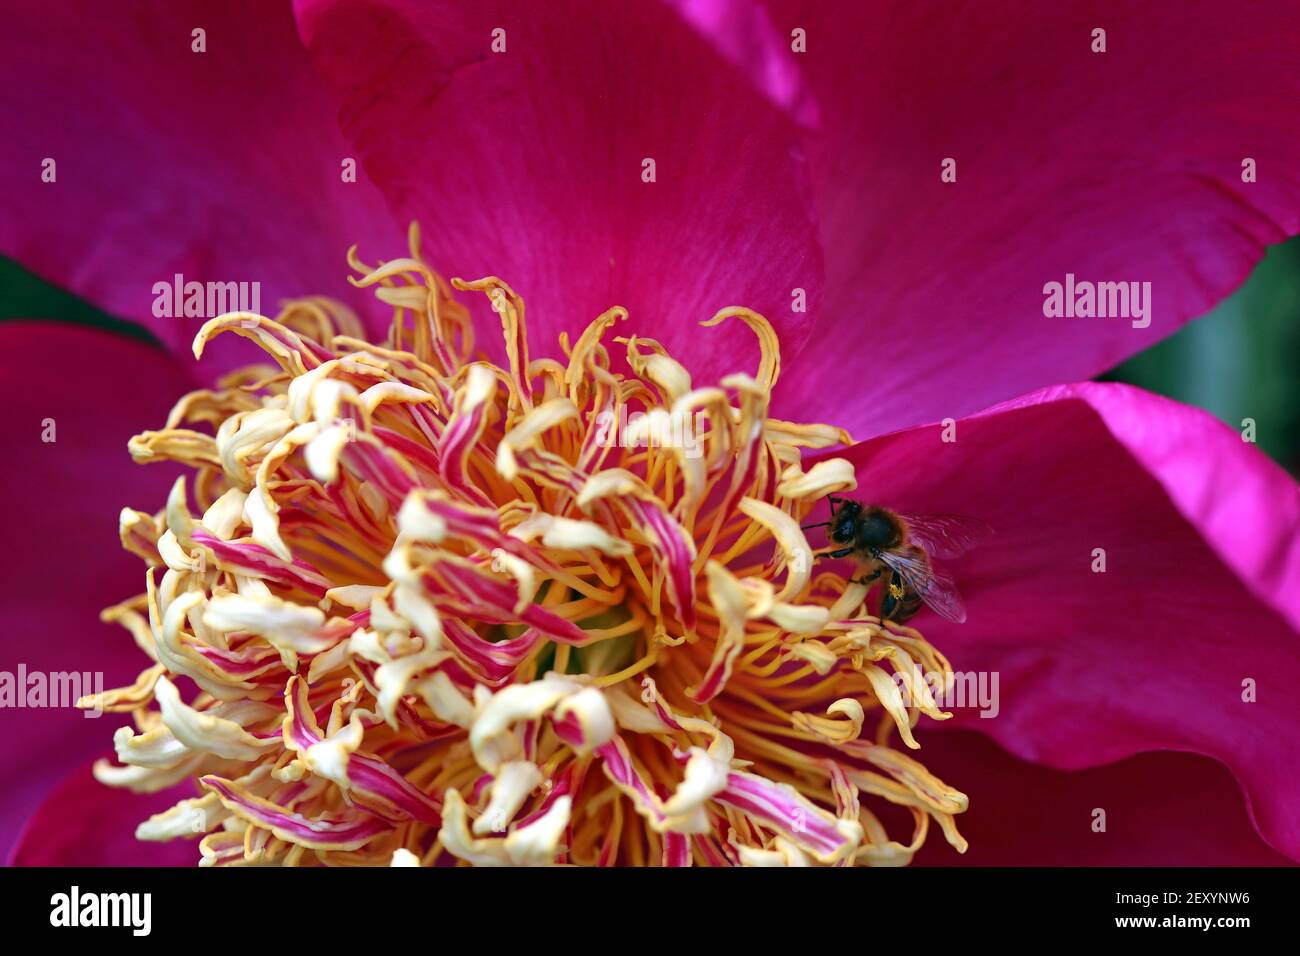 Makroaufnahme von hellmagenta krautiger Pfingstrose mit spiralförmigen gelb-rosa Staubgefäßen; eine Honigbiene sammelt Pollen aus den Staubgefäßen. Paeoniaceae Familie Stockfoto